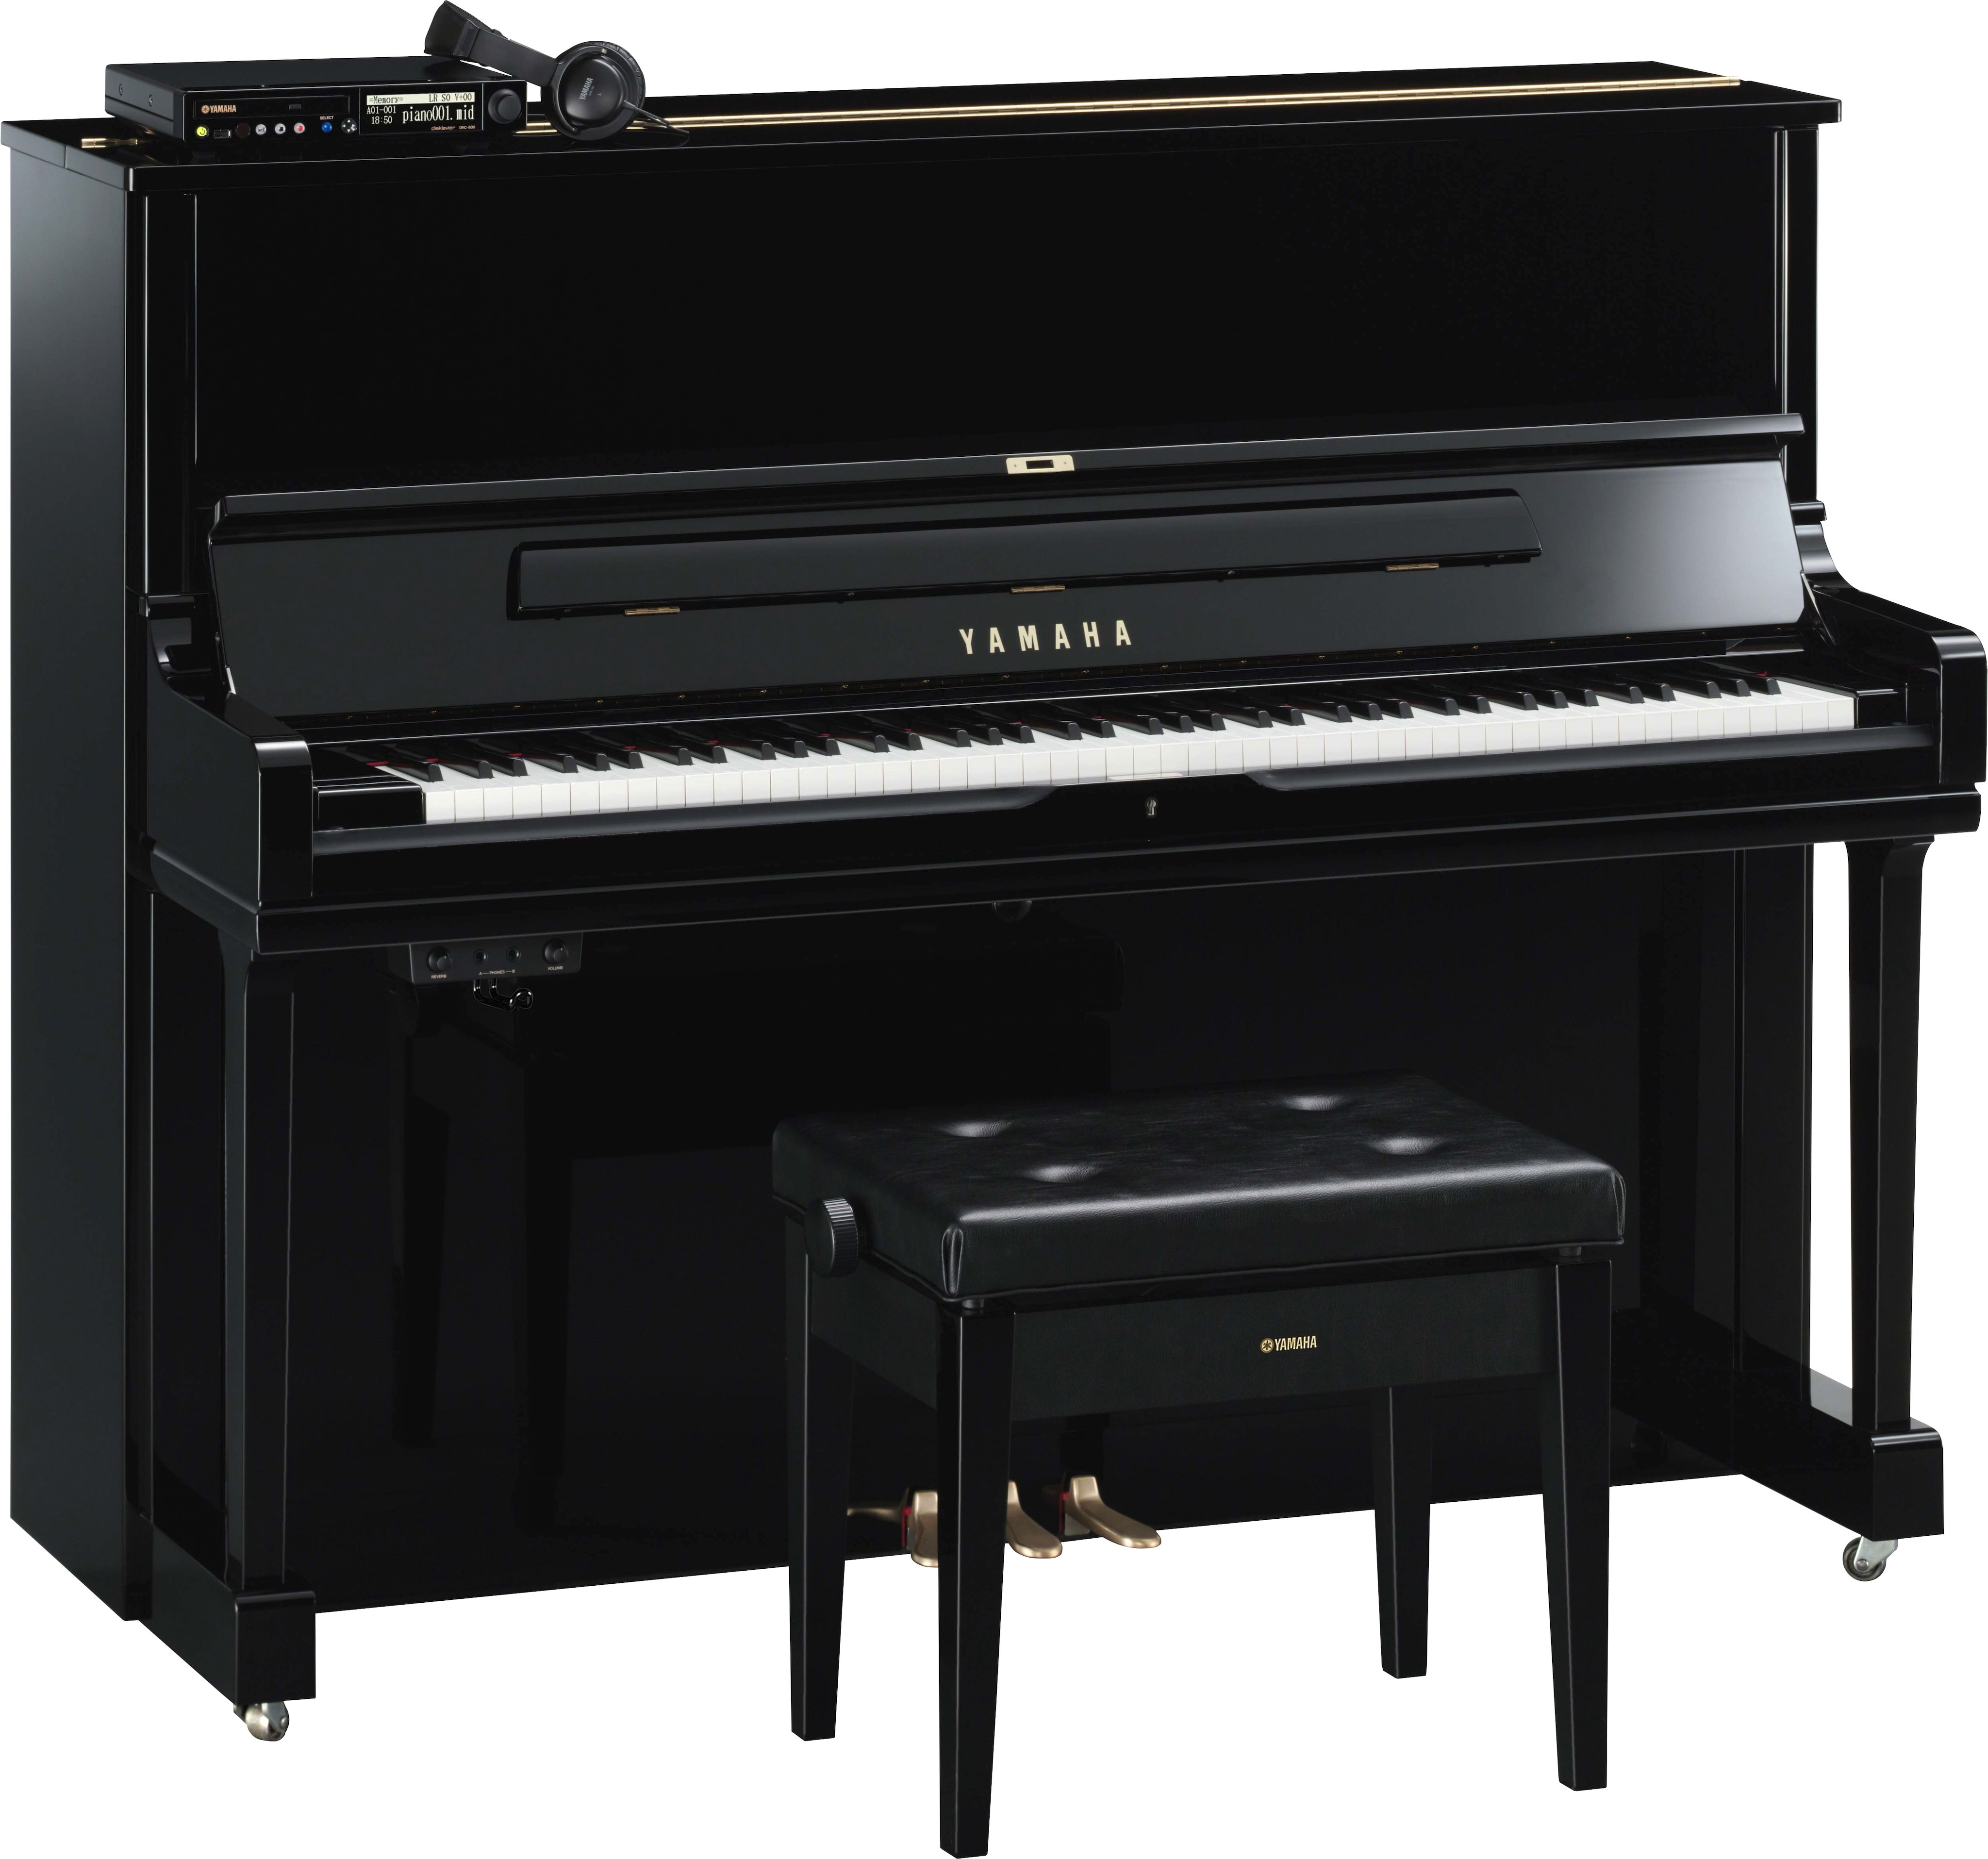 自動演奏ピアノ ディスクラビアコントロールユニット DKC-850 YAMAHA 